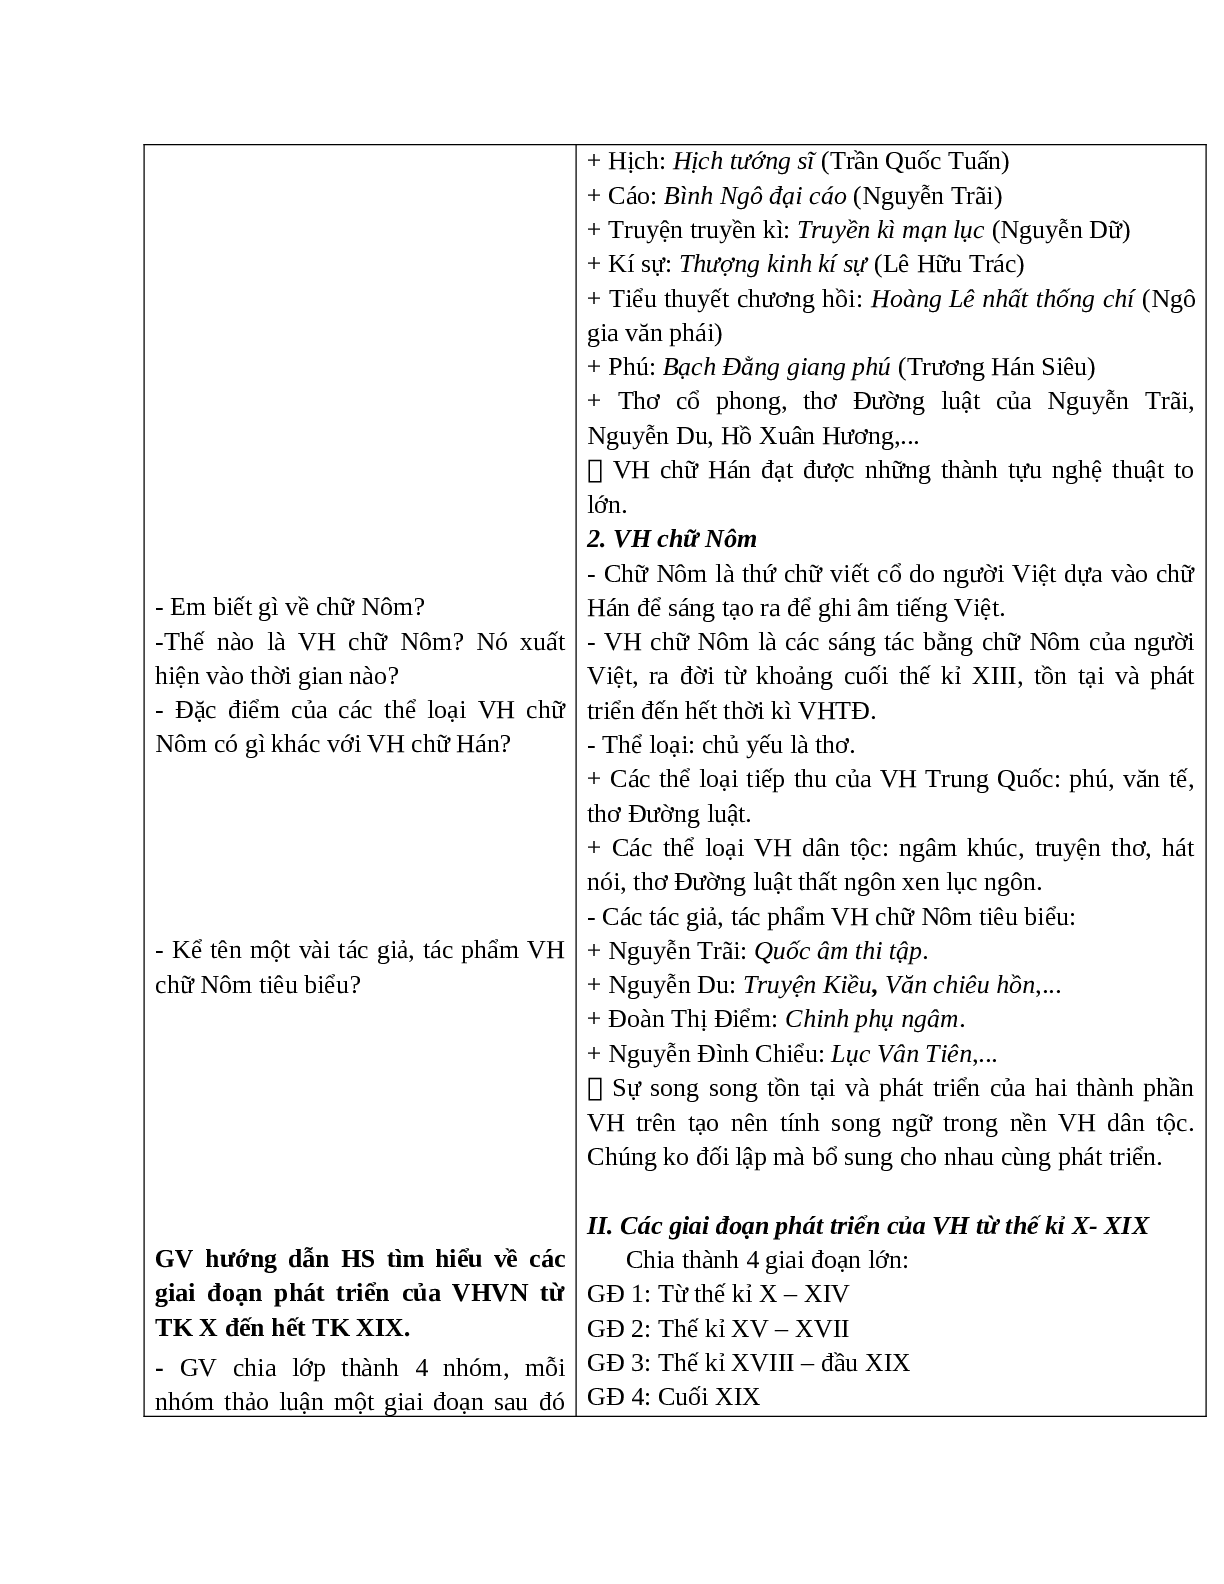 Giáo án Ngữ văn 10 tập 1 bài Khái quát văn học Việt Nam từ thế kỉ X đến hết thế kỉ XIX (Tiết 1) mới nhất (trang 3)